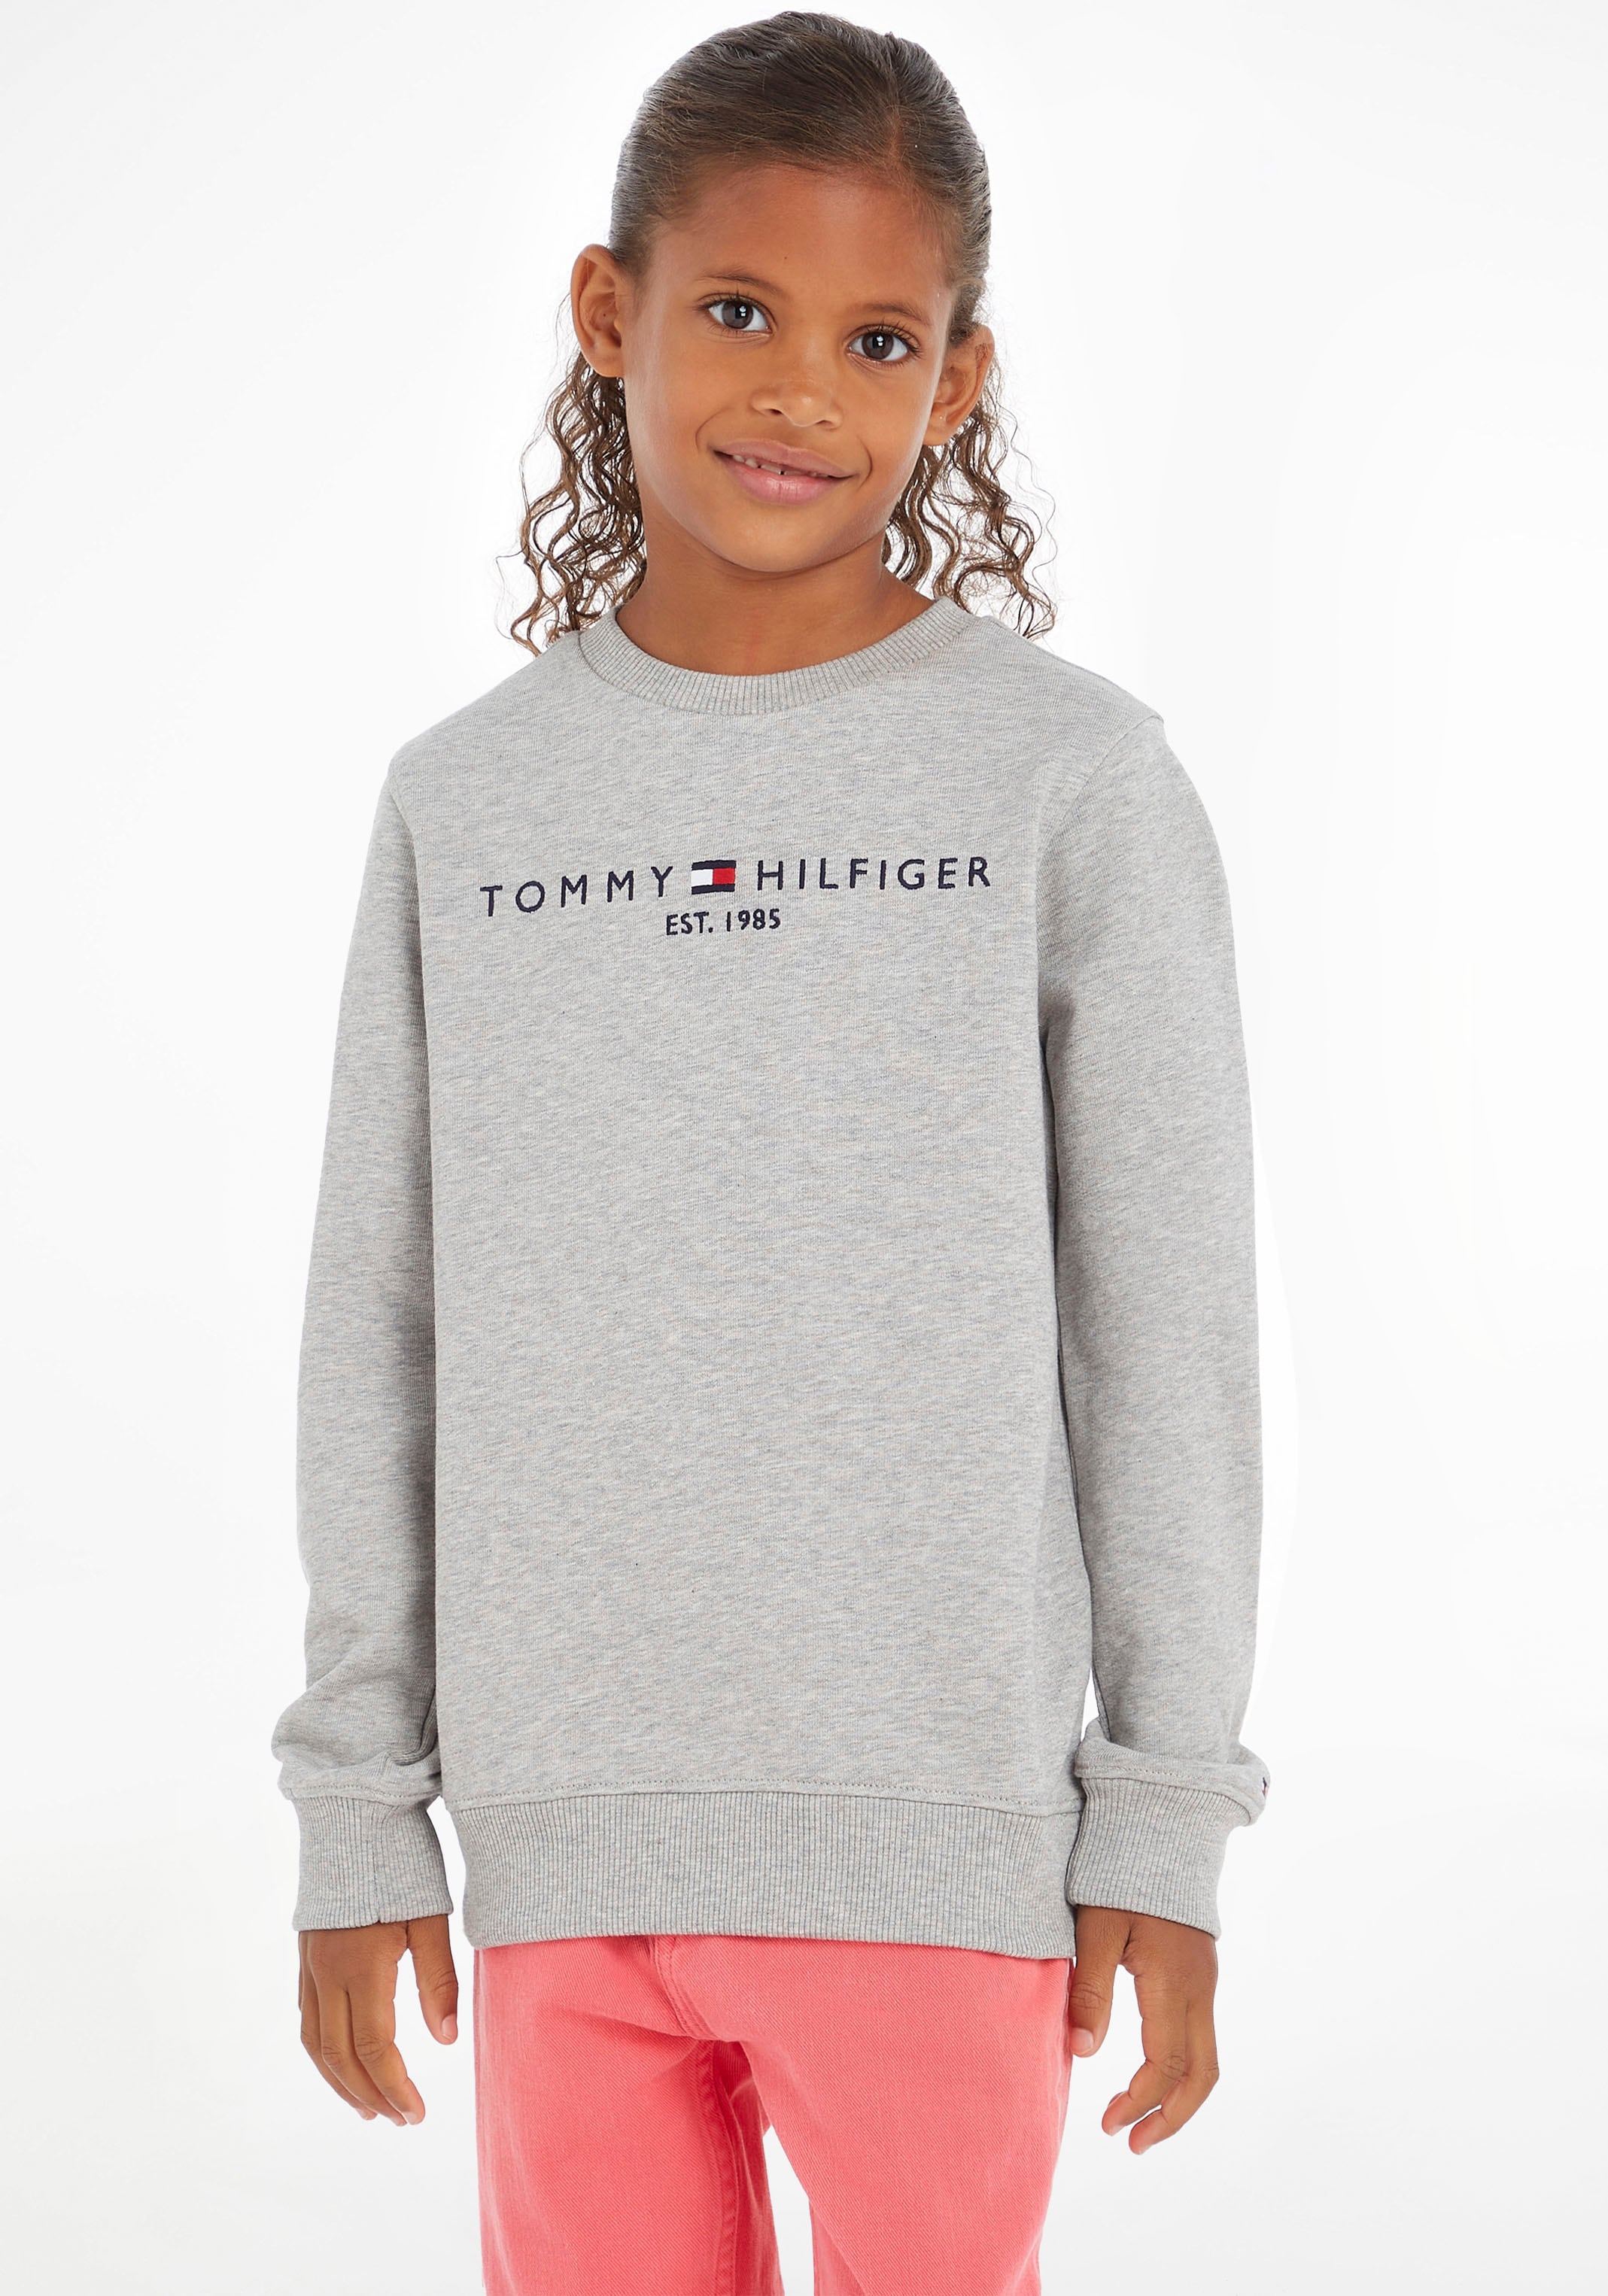 »ESSENTIAL bei Hilfiger Mädchen Junior Sweatshirt MiniMe,für und ♕ Jungen Kids Kinder Tommy SWEATSHIRT«,